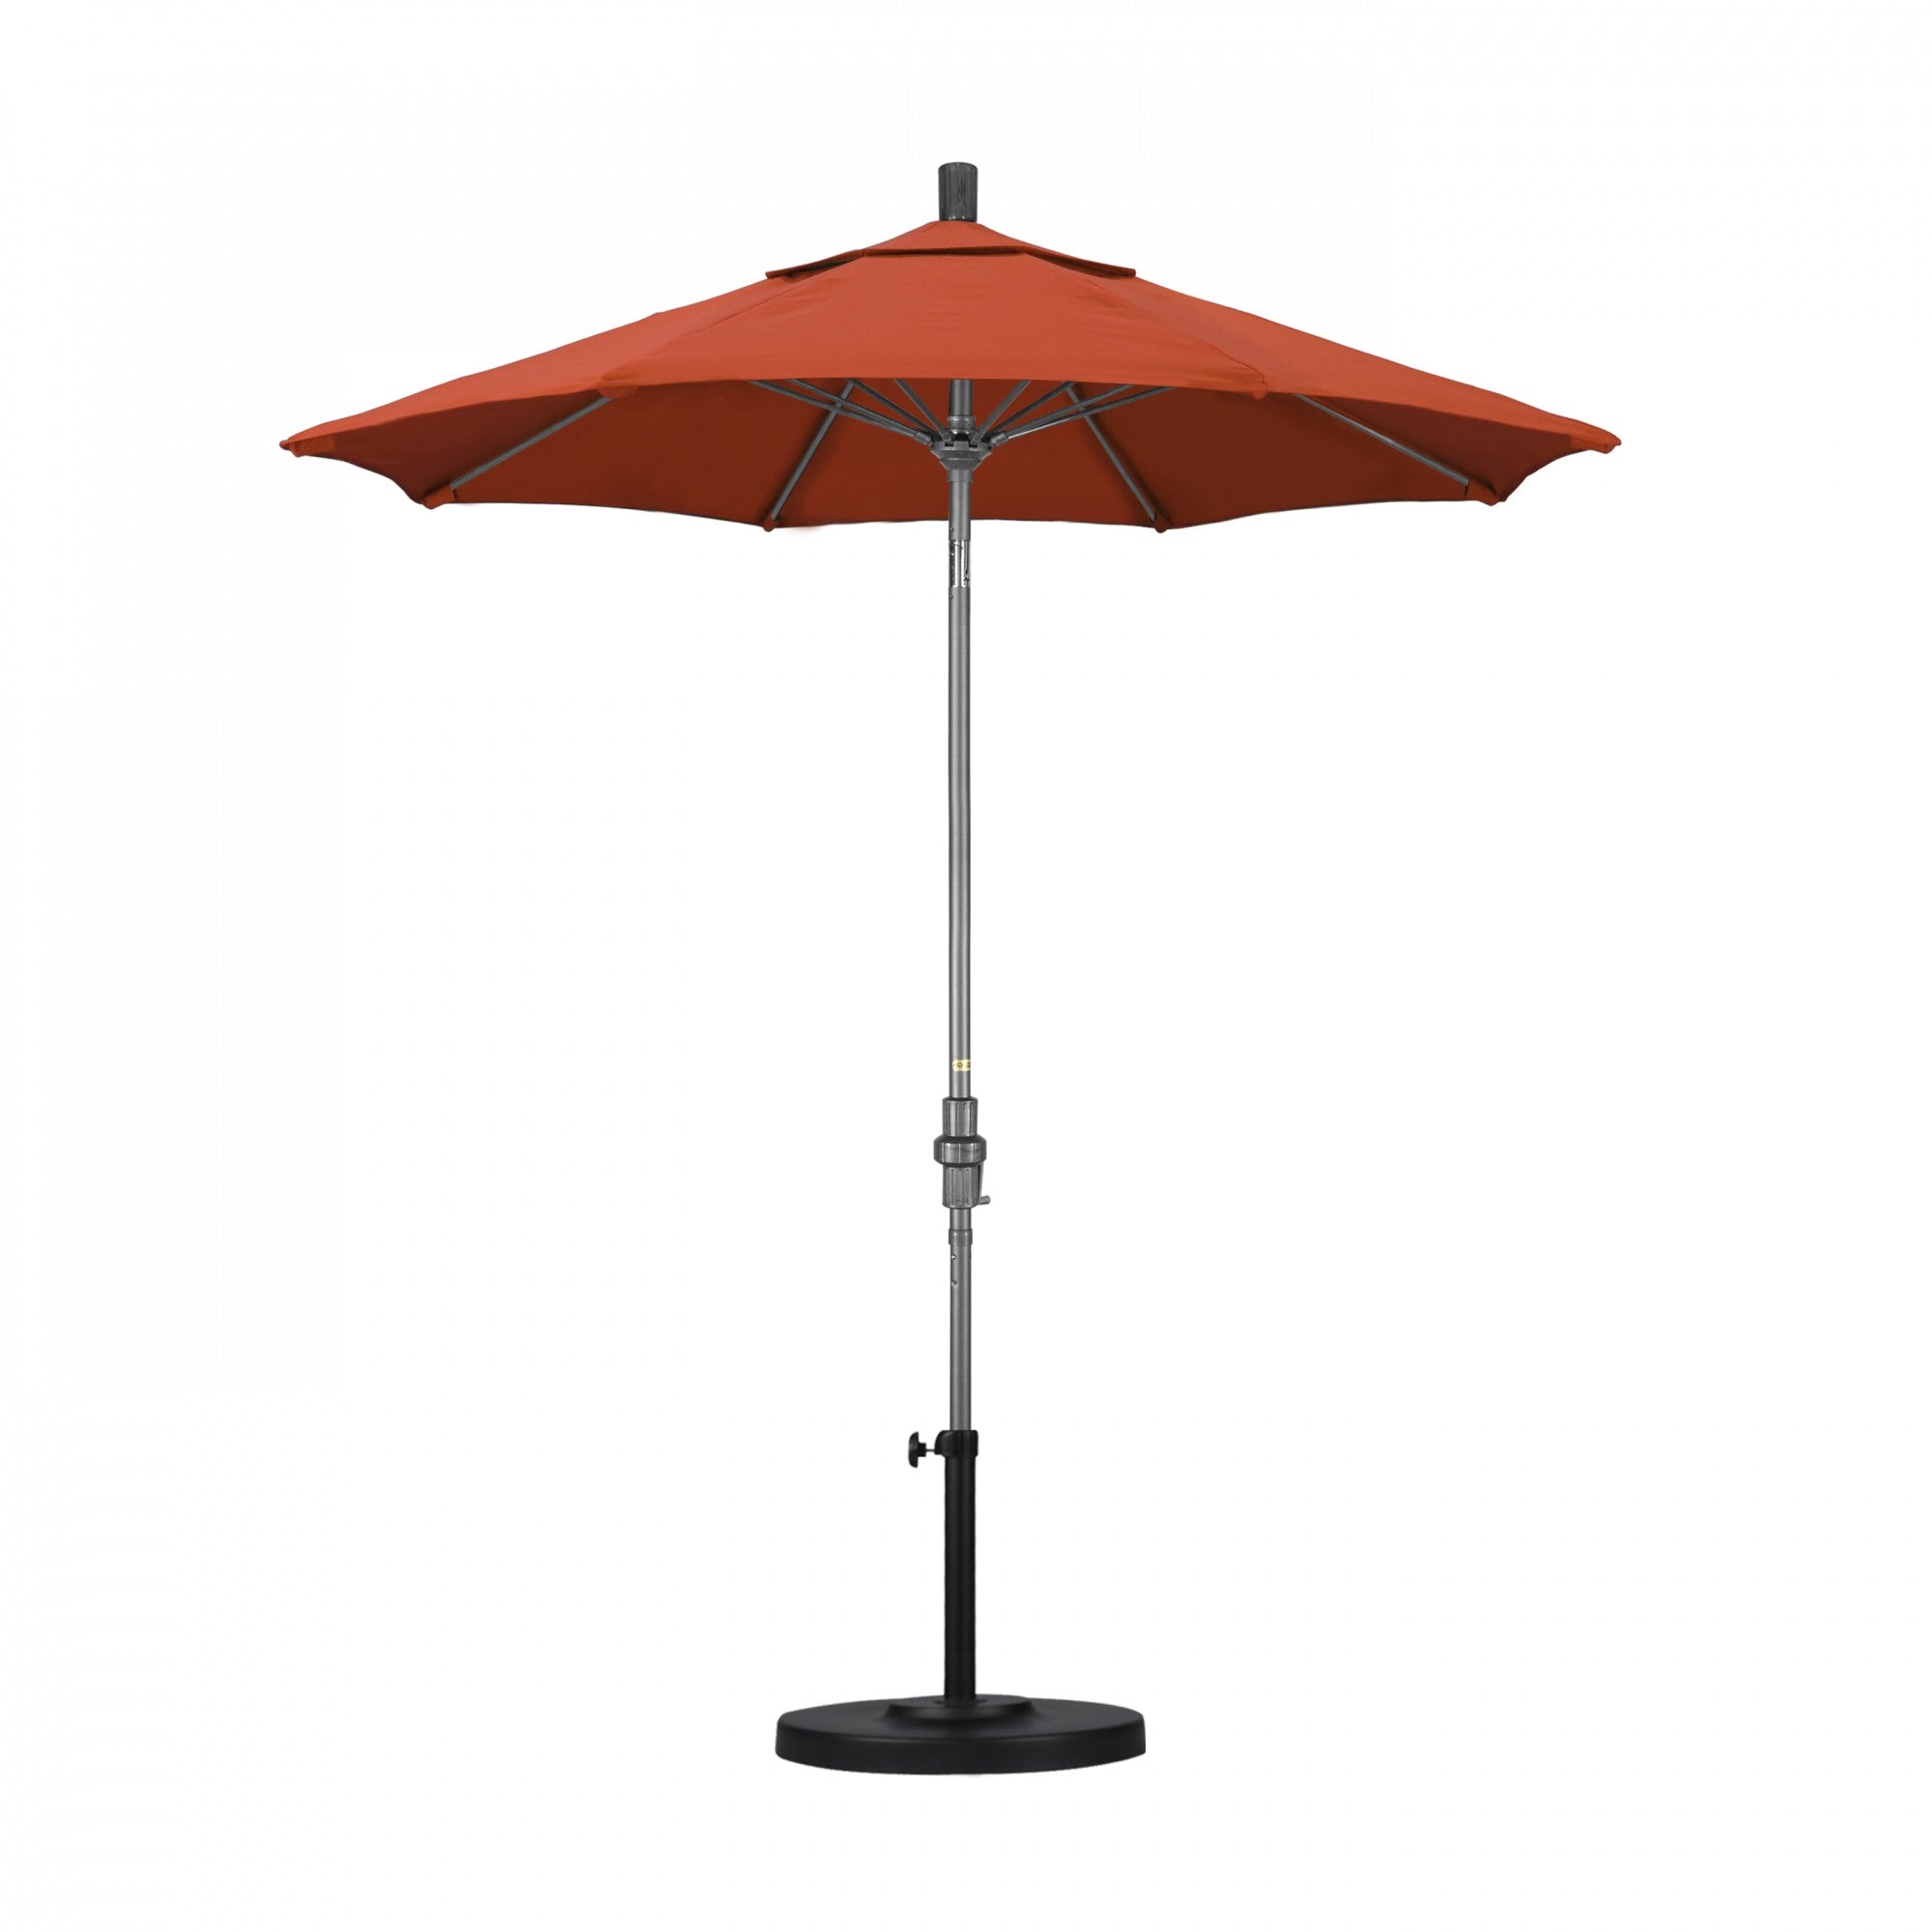 California Umbrella - 7.5' - Patio Umbrella Umbrella - Aluminum Pole - Sunset - Olefin - GSCUF758010-F27